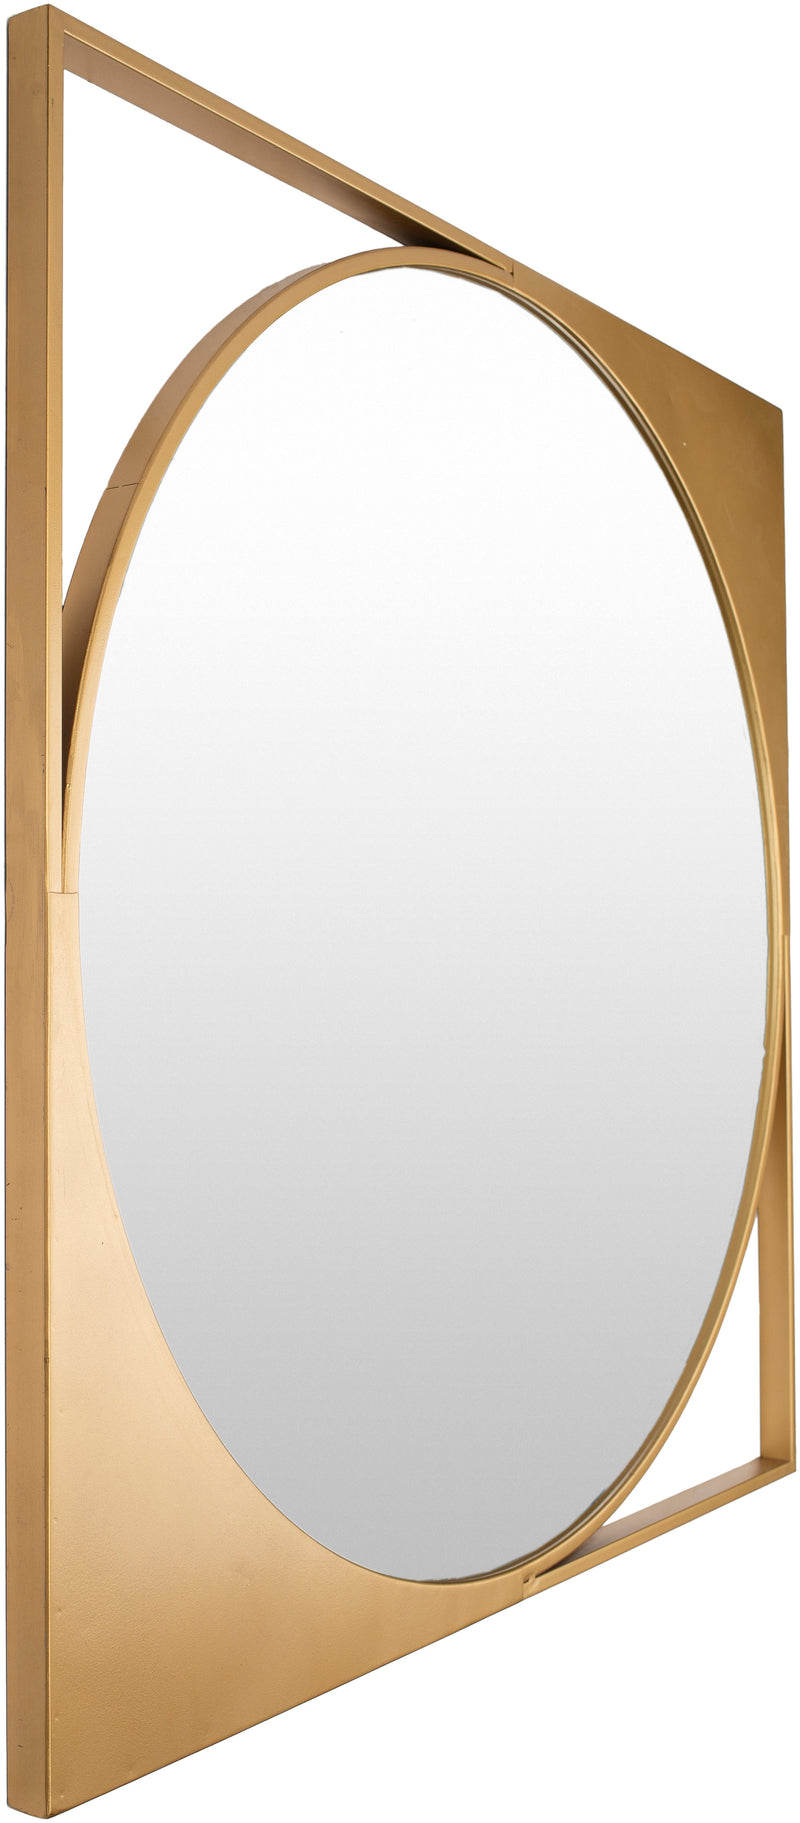 Bauhaus Metal Gold Mirror 30" x 30"